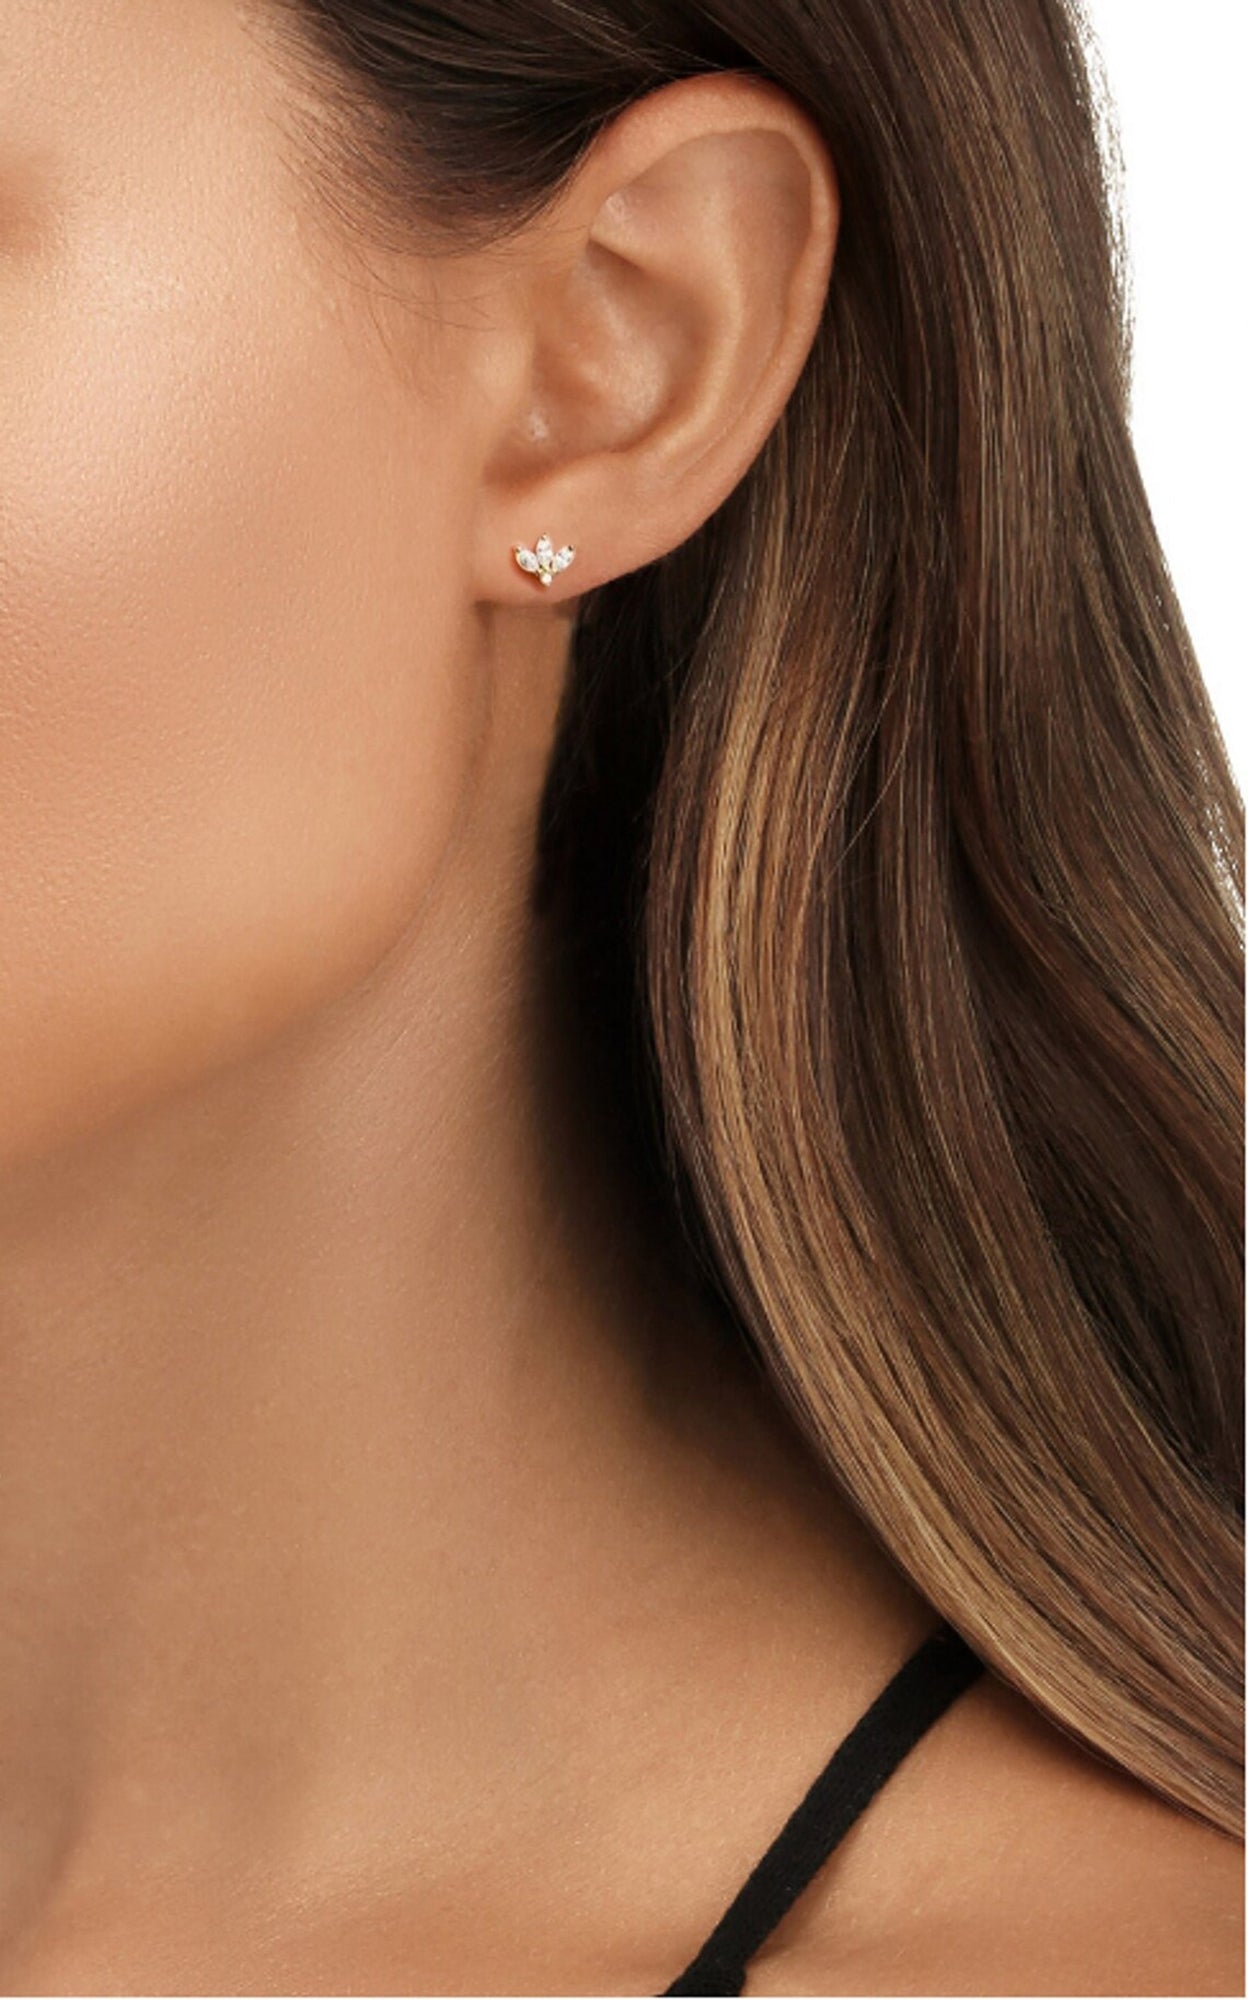 Cz earrings